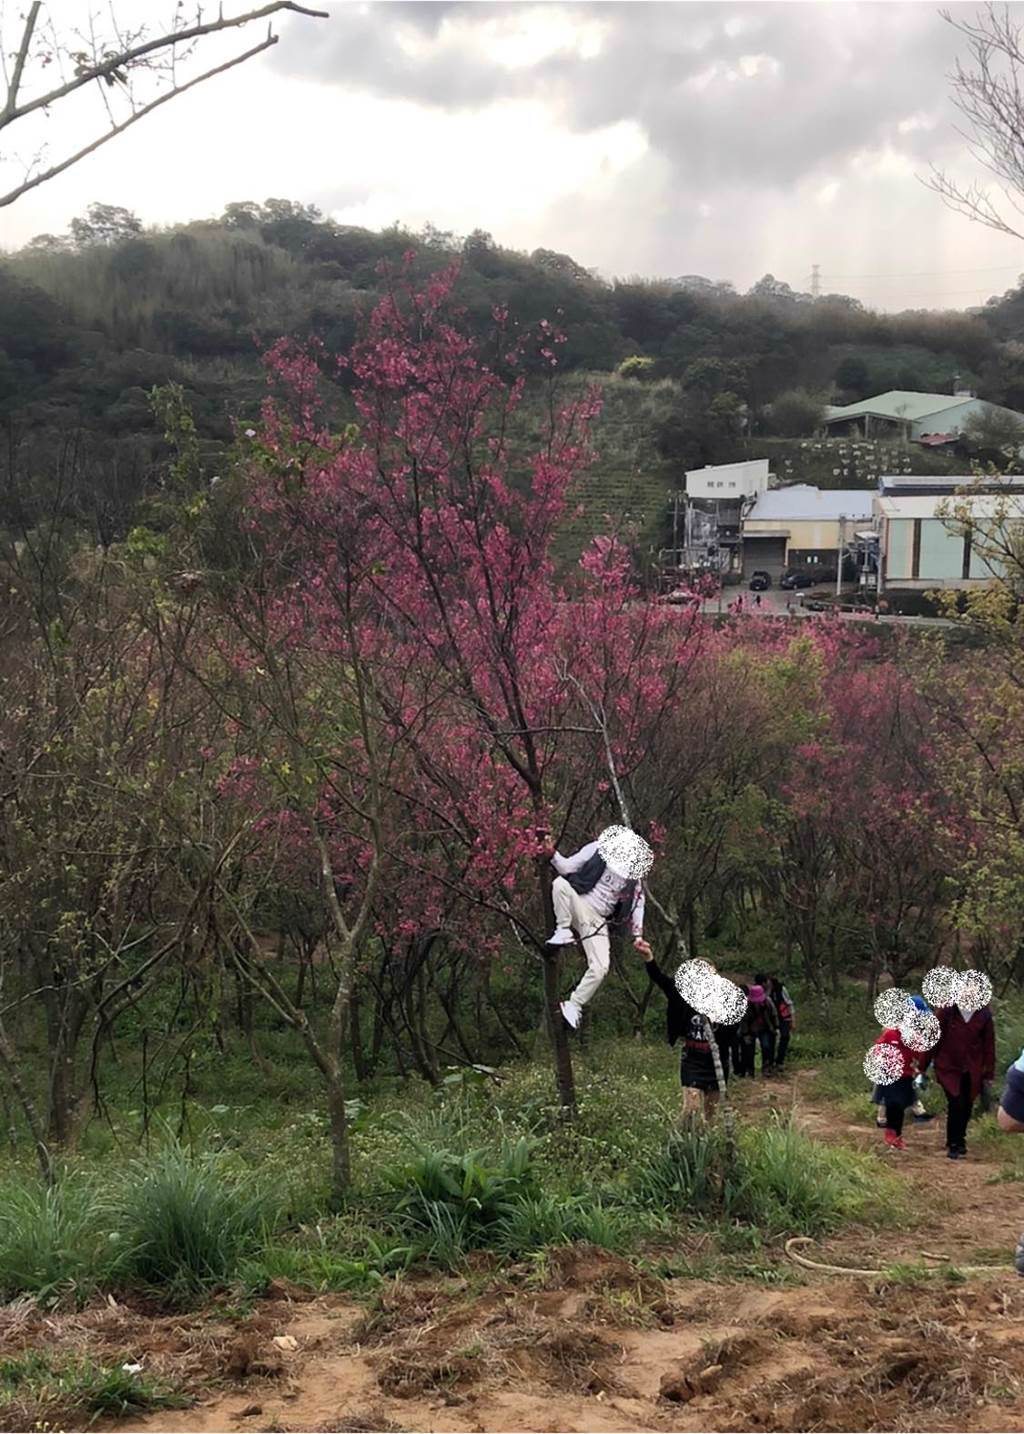 網友PO出爬上櫻花樹拍照的男子。(圖/截自臉書 爆料公社二社)